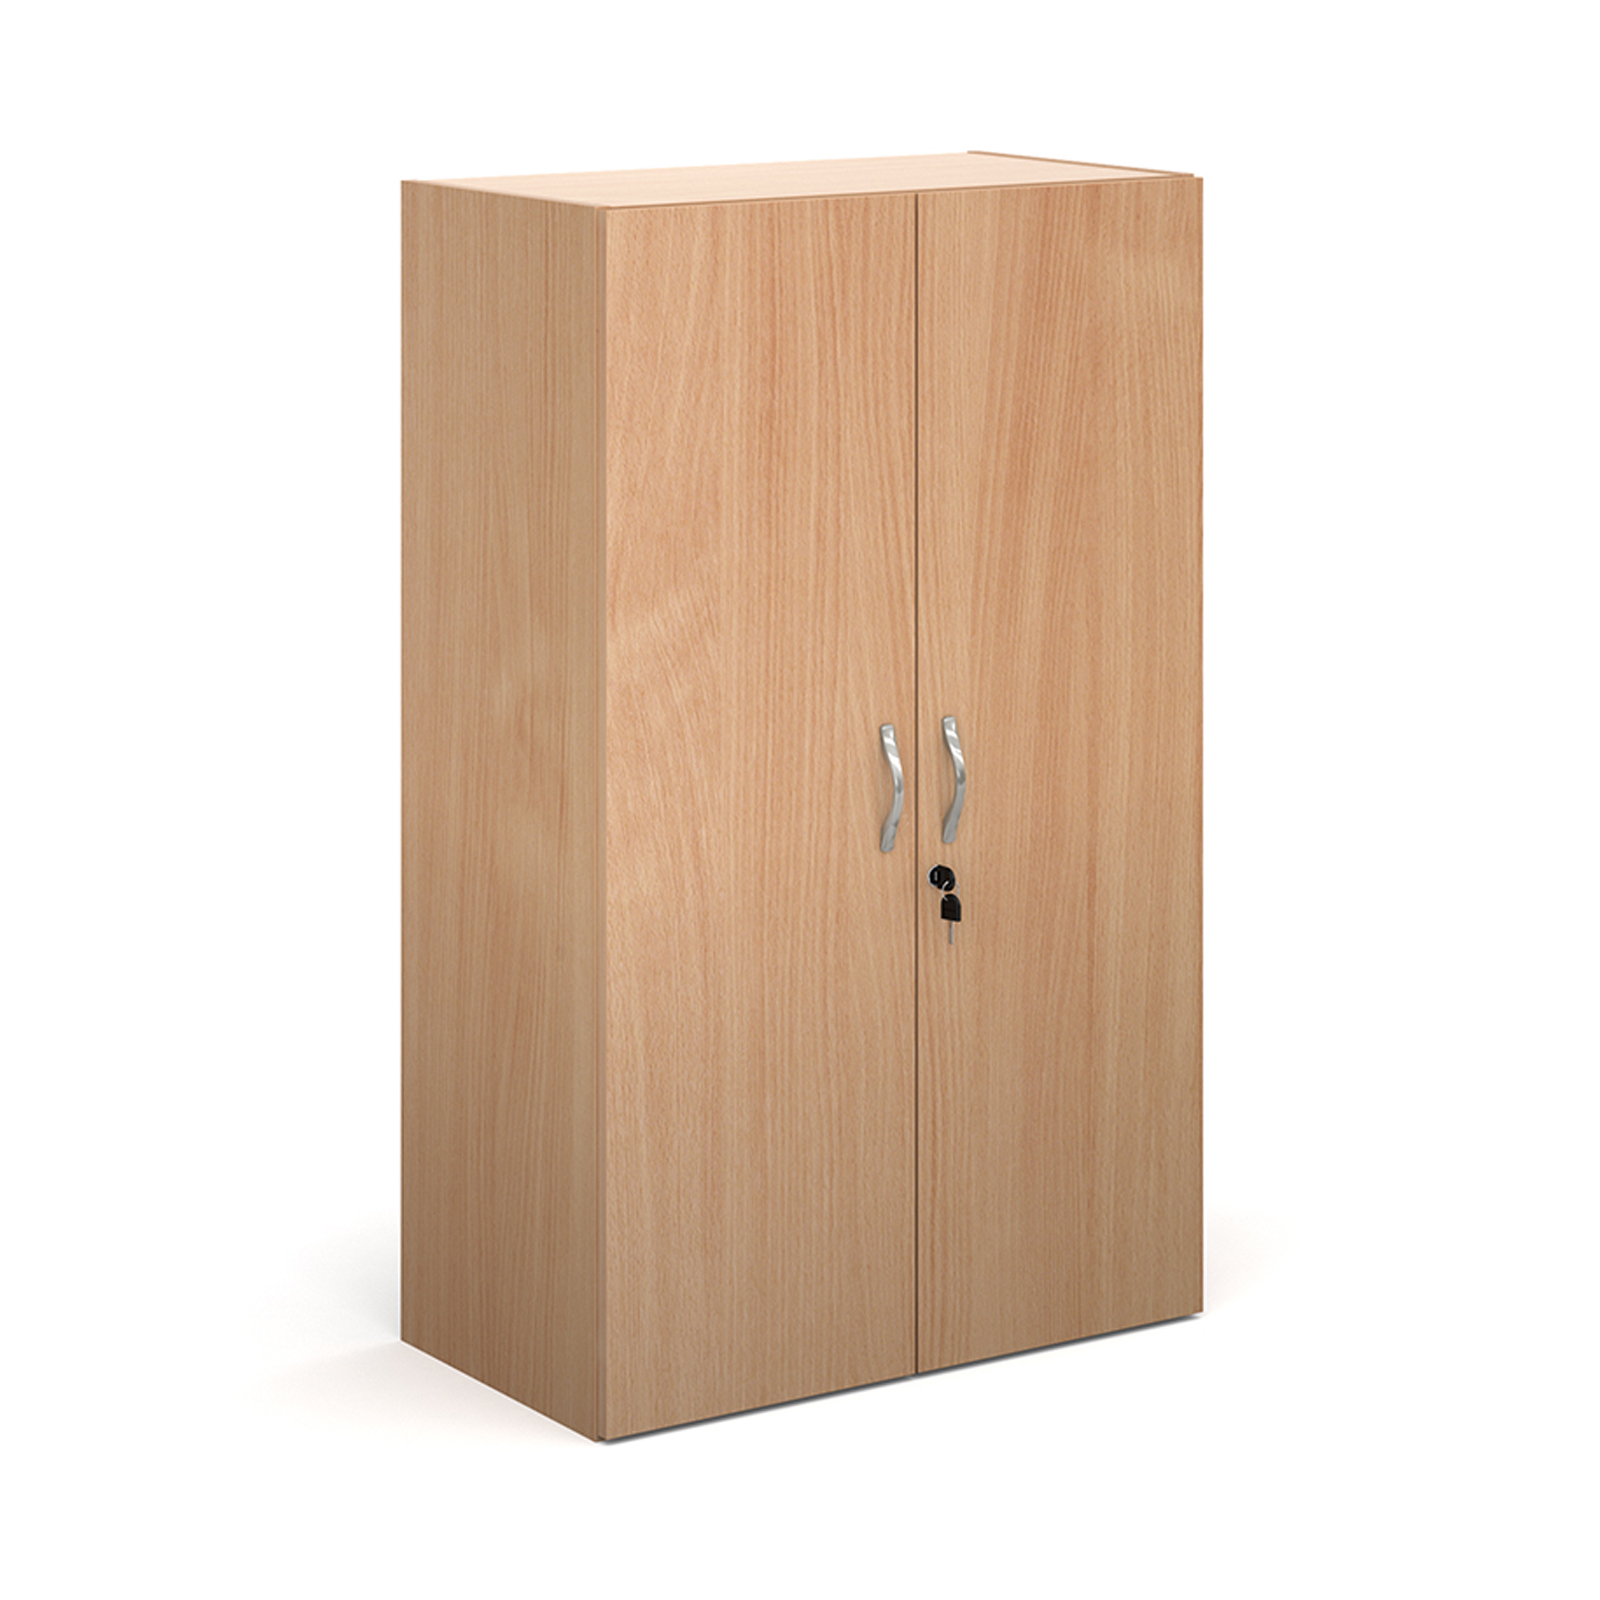 Value Line Classic+ Double Door Office Cupboards, 2 Shelf - 76wx39dx123h (cm), Beech